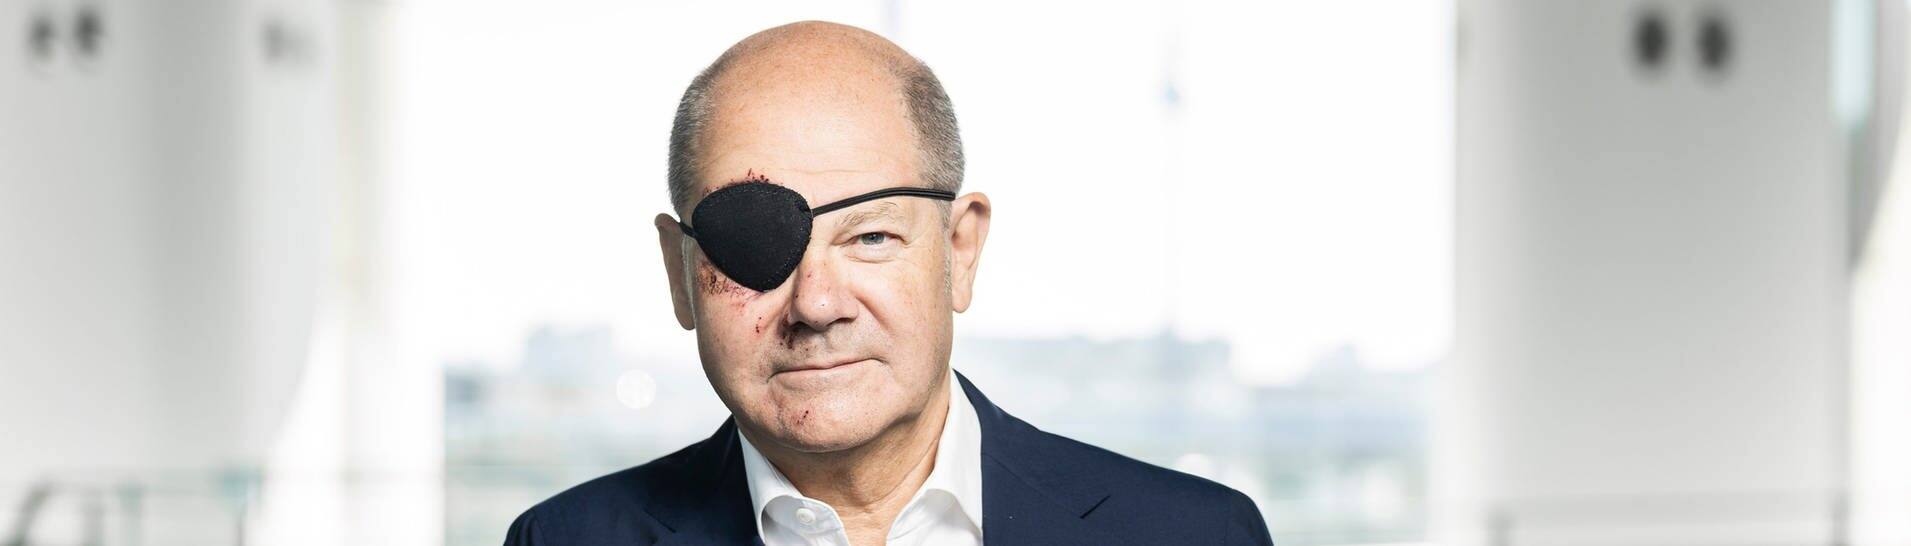 Bundeskanzler Olaf Scholz (SPD) mit Augenklappe, die er aufgrund einer Sportverletzung trägt. (Foto: dpa Bildfunk, picture alliance/dpa/Bundesregierung | Steffen Kugler)